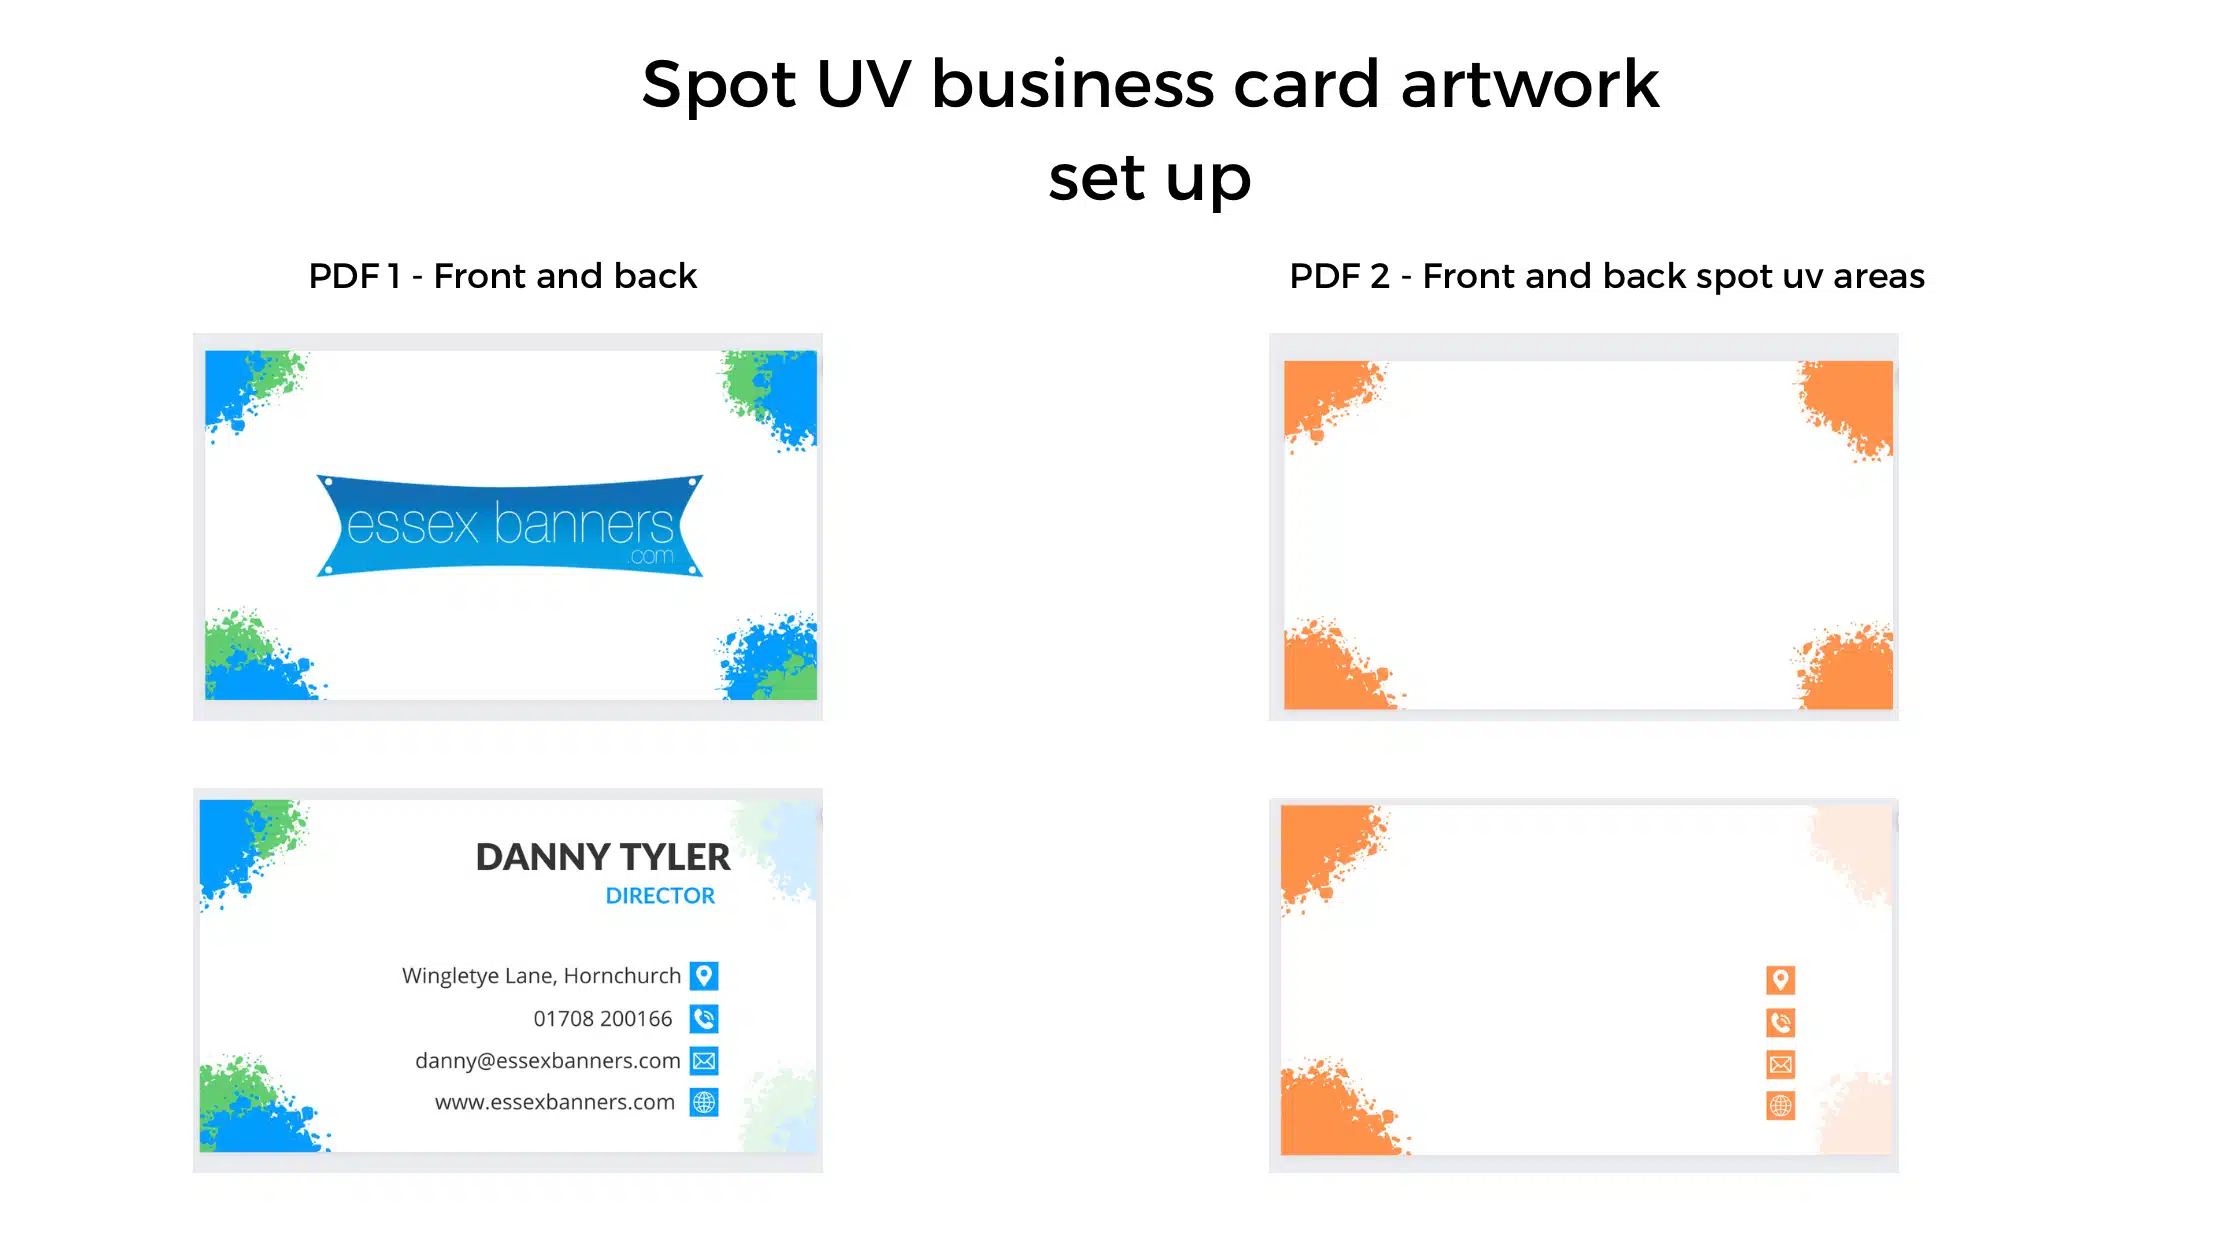 How to setup your spot uv artwork